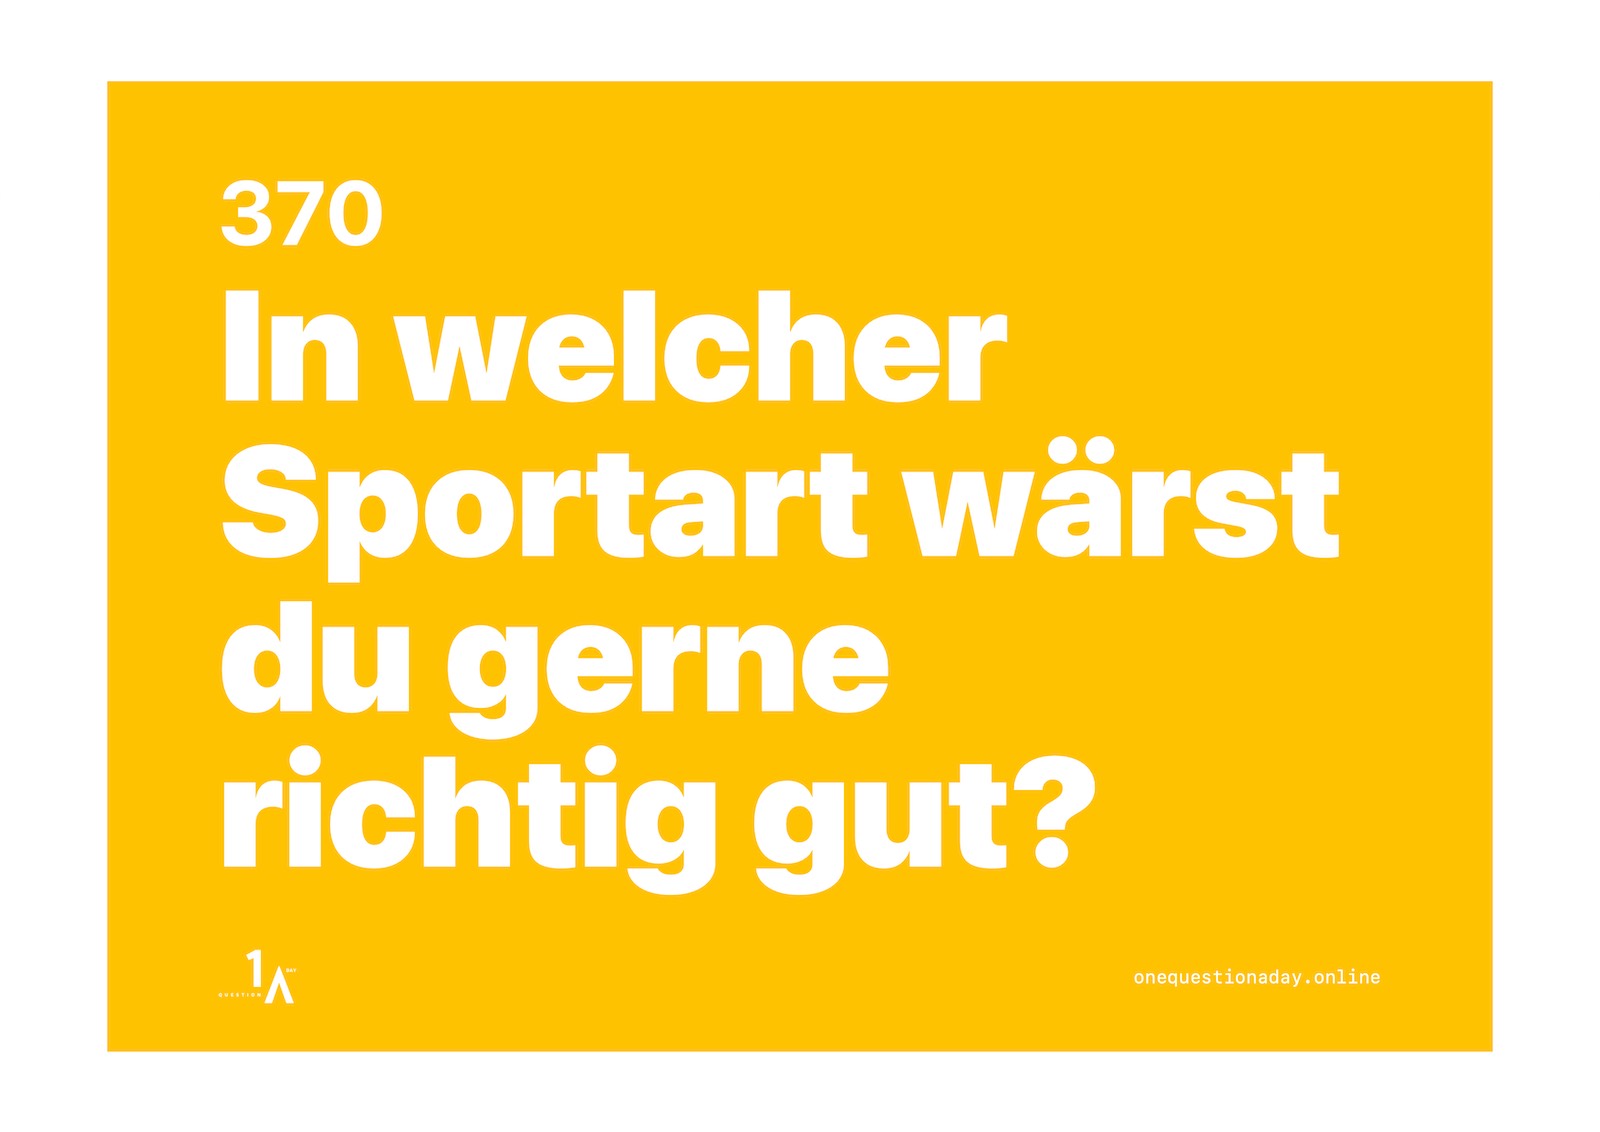 Das Bild ist ein farbiges Poster, auf dem in weisser Schrift die Frage steht: "In welcher Sportart wärst du gerne richtig gut?"